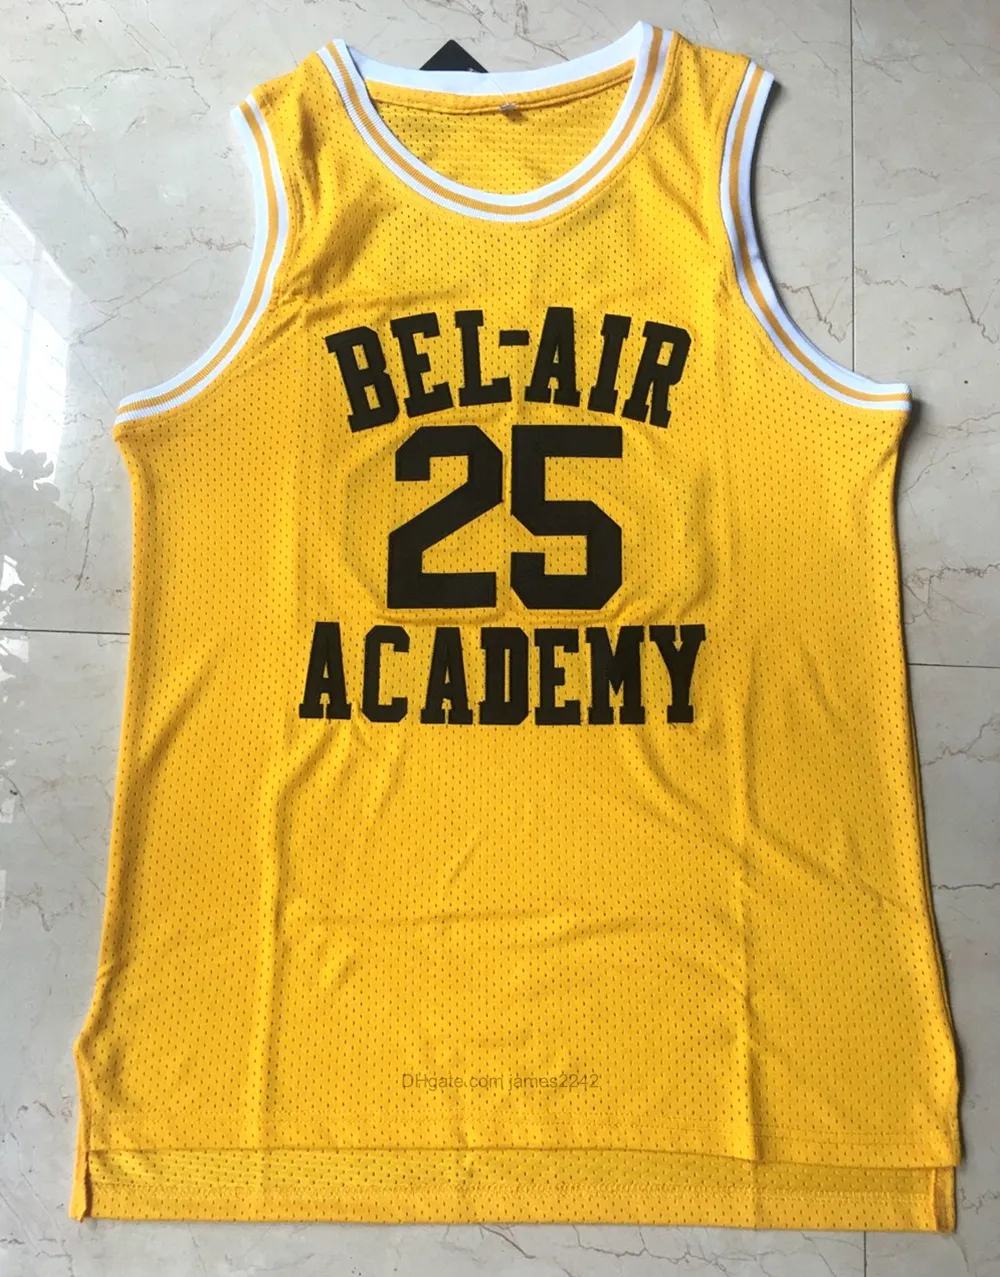 Expédier de nous # 25 Carlton Banks Basketball Jersey Fresh Prince Bel-Air Academy Film Jerseys Pouciation Jaune Broderie S-3XL de haute qualité